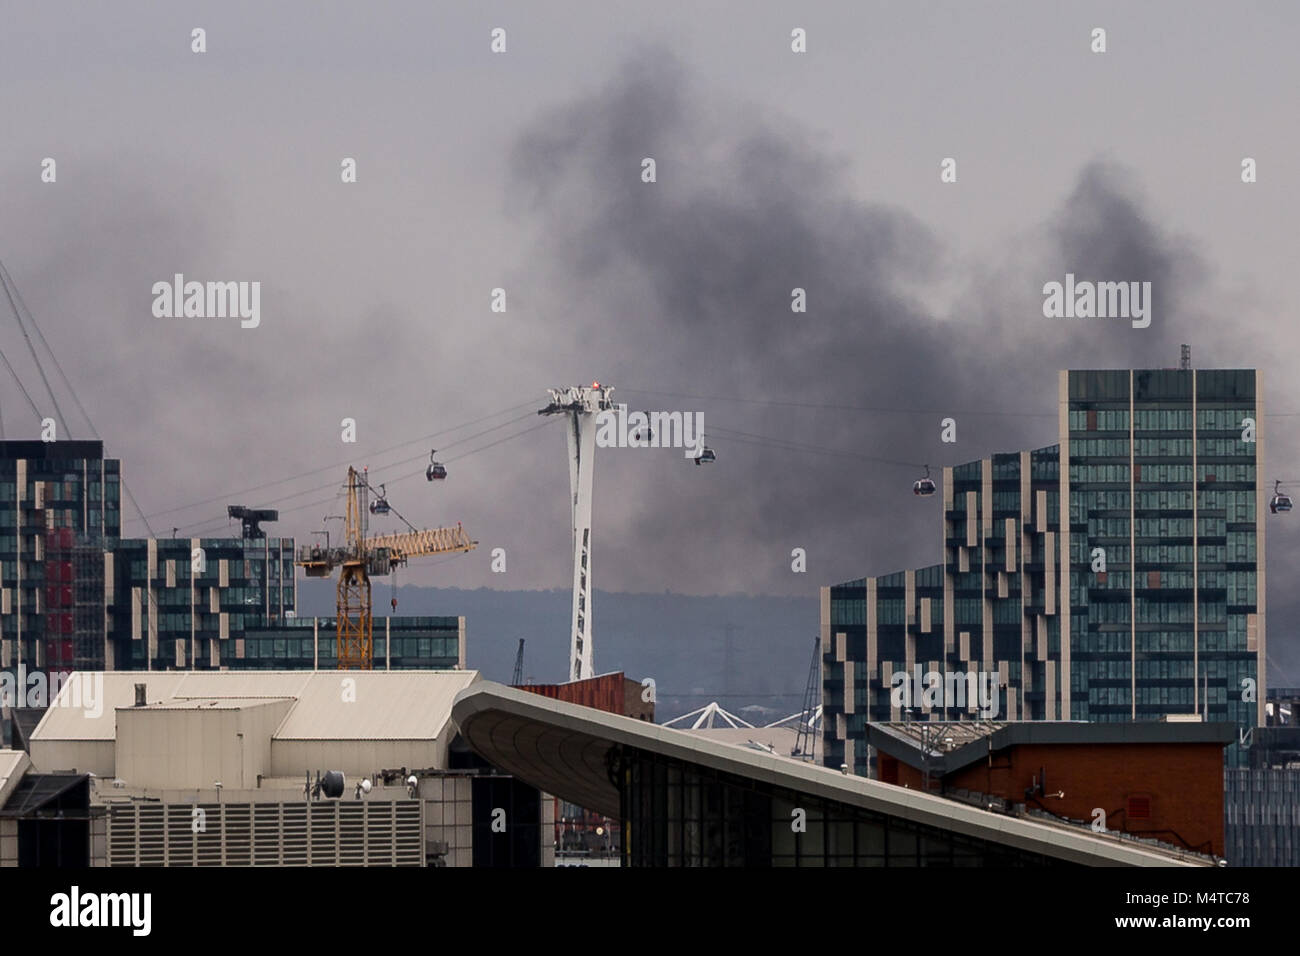 Londres, Royaume-Uni. Feb 18, 2018. L'Incendie de Londres : fumée noire s'élève au-dessus de bâtiments de l'Est de Londres avec Emirates airline téléphériques en vue. Crédit : Guy Josse/Alamy Live News Banque D'Images